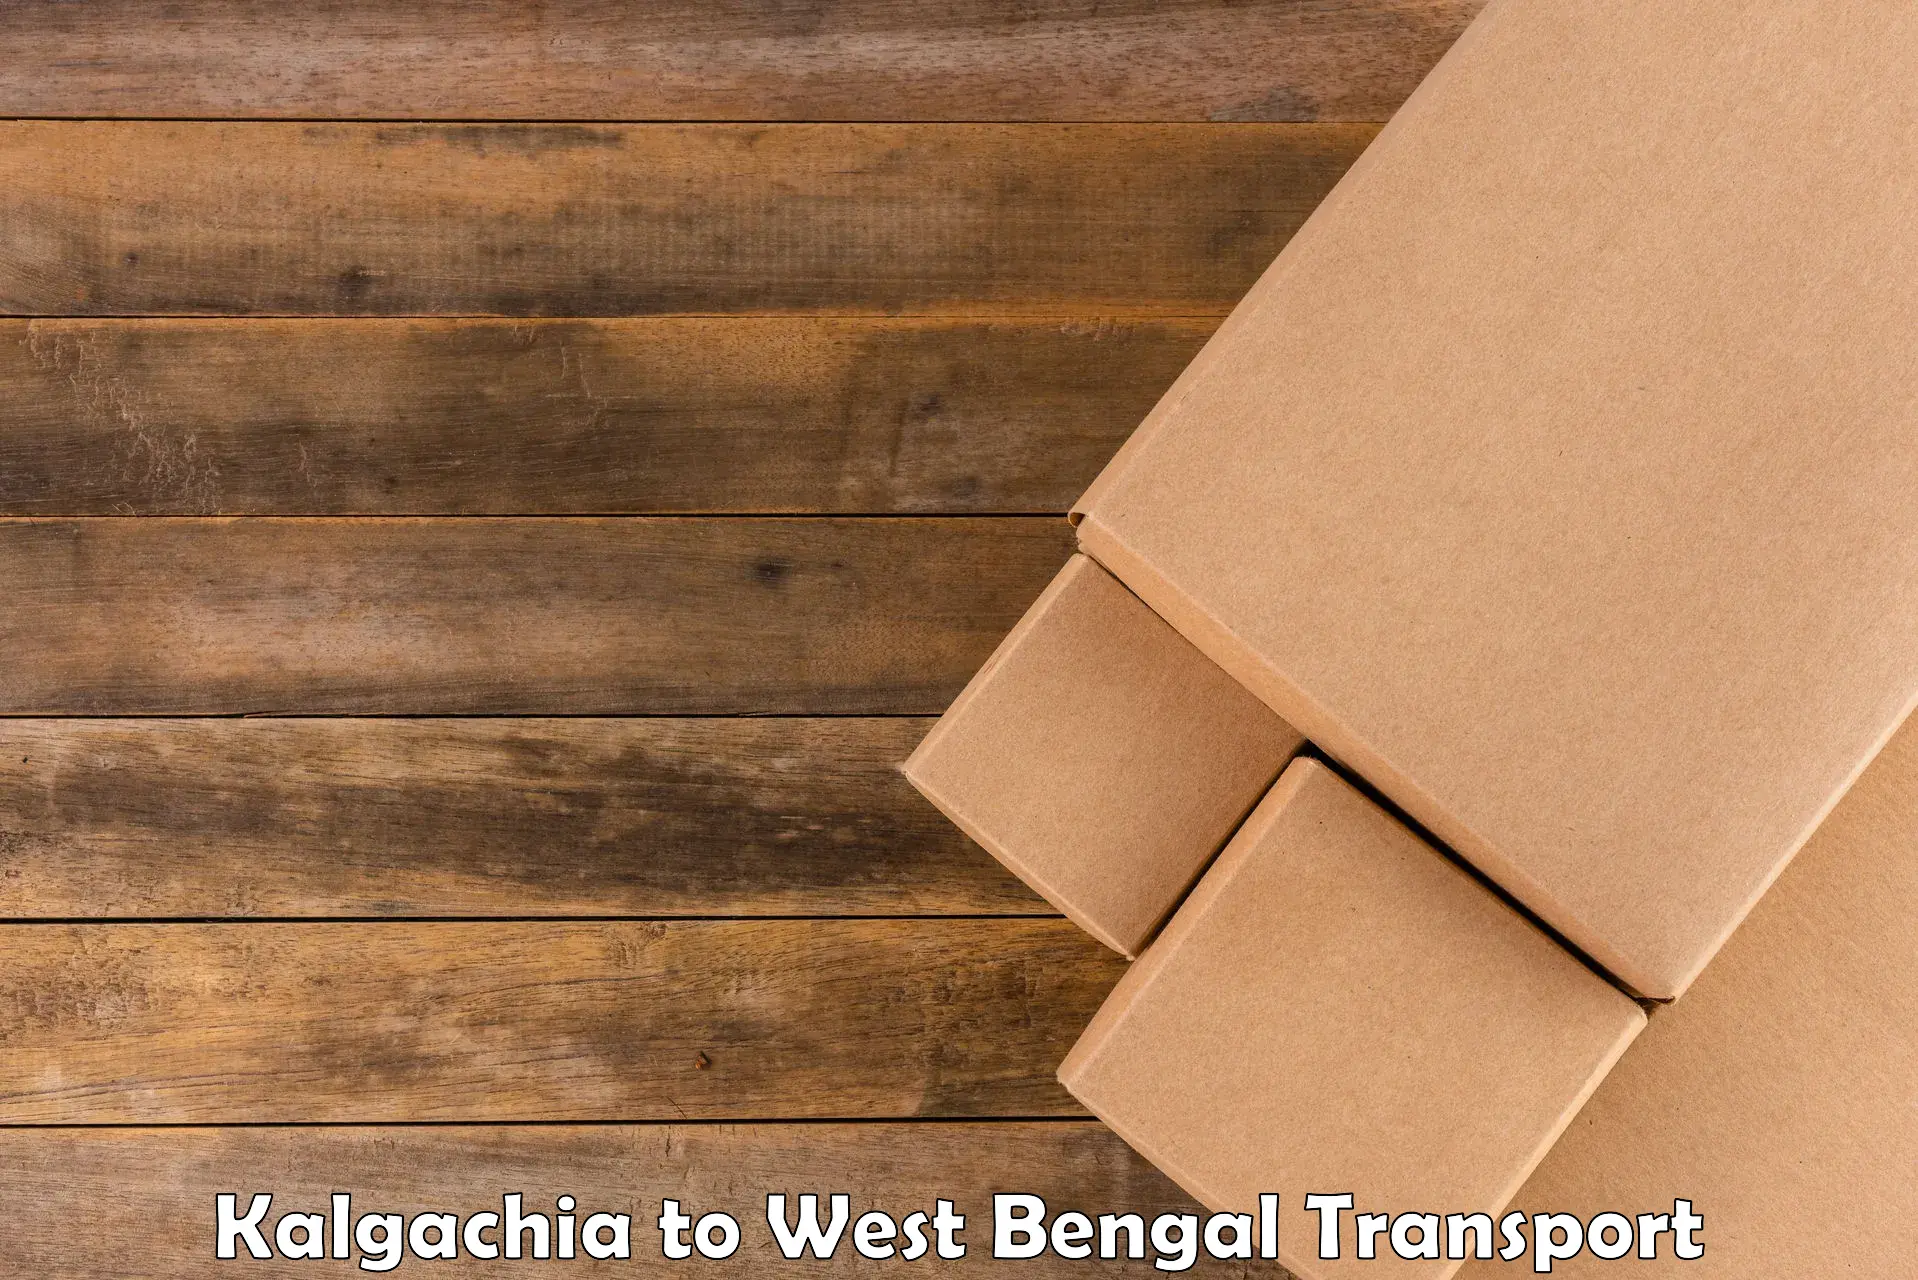 Vehicle transport services Kalgachia to Mirzapur Bardhaman